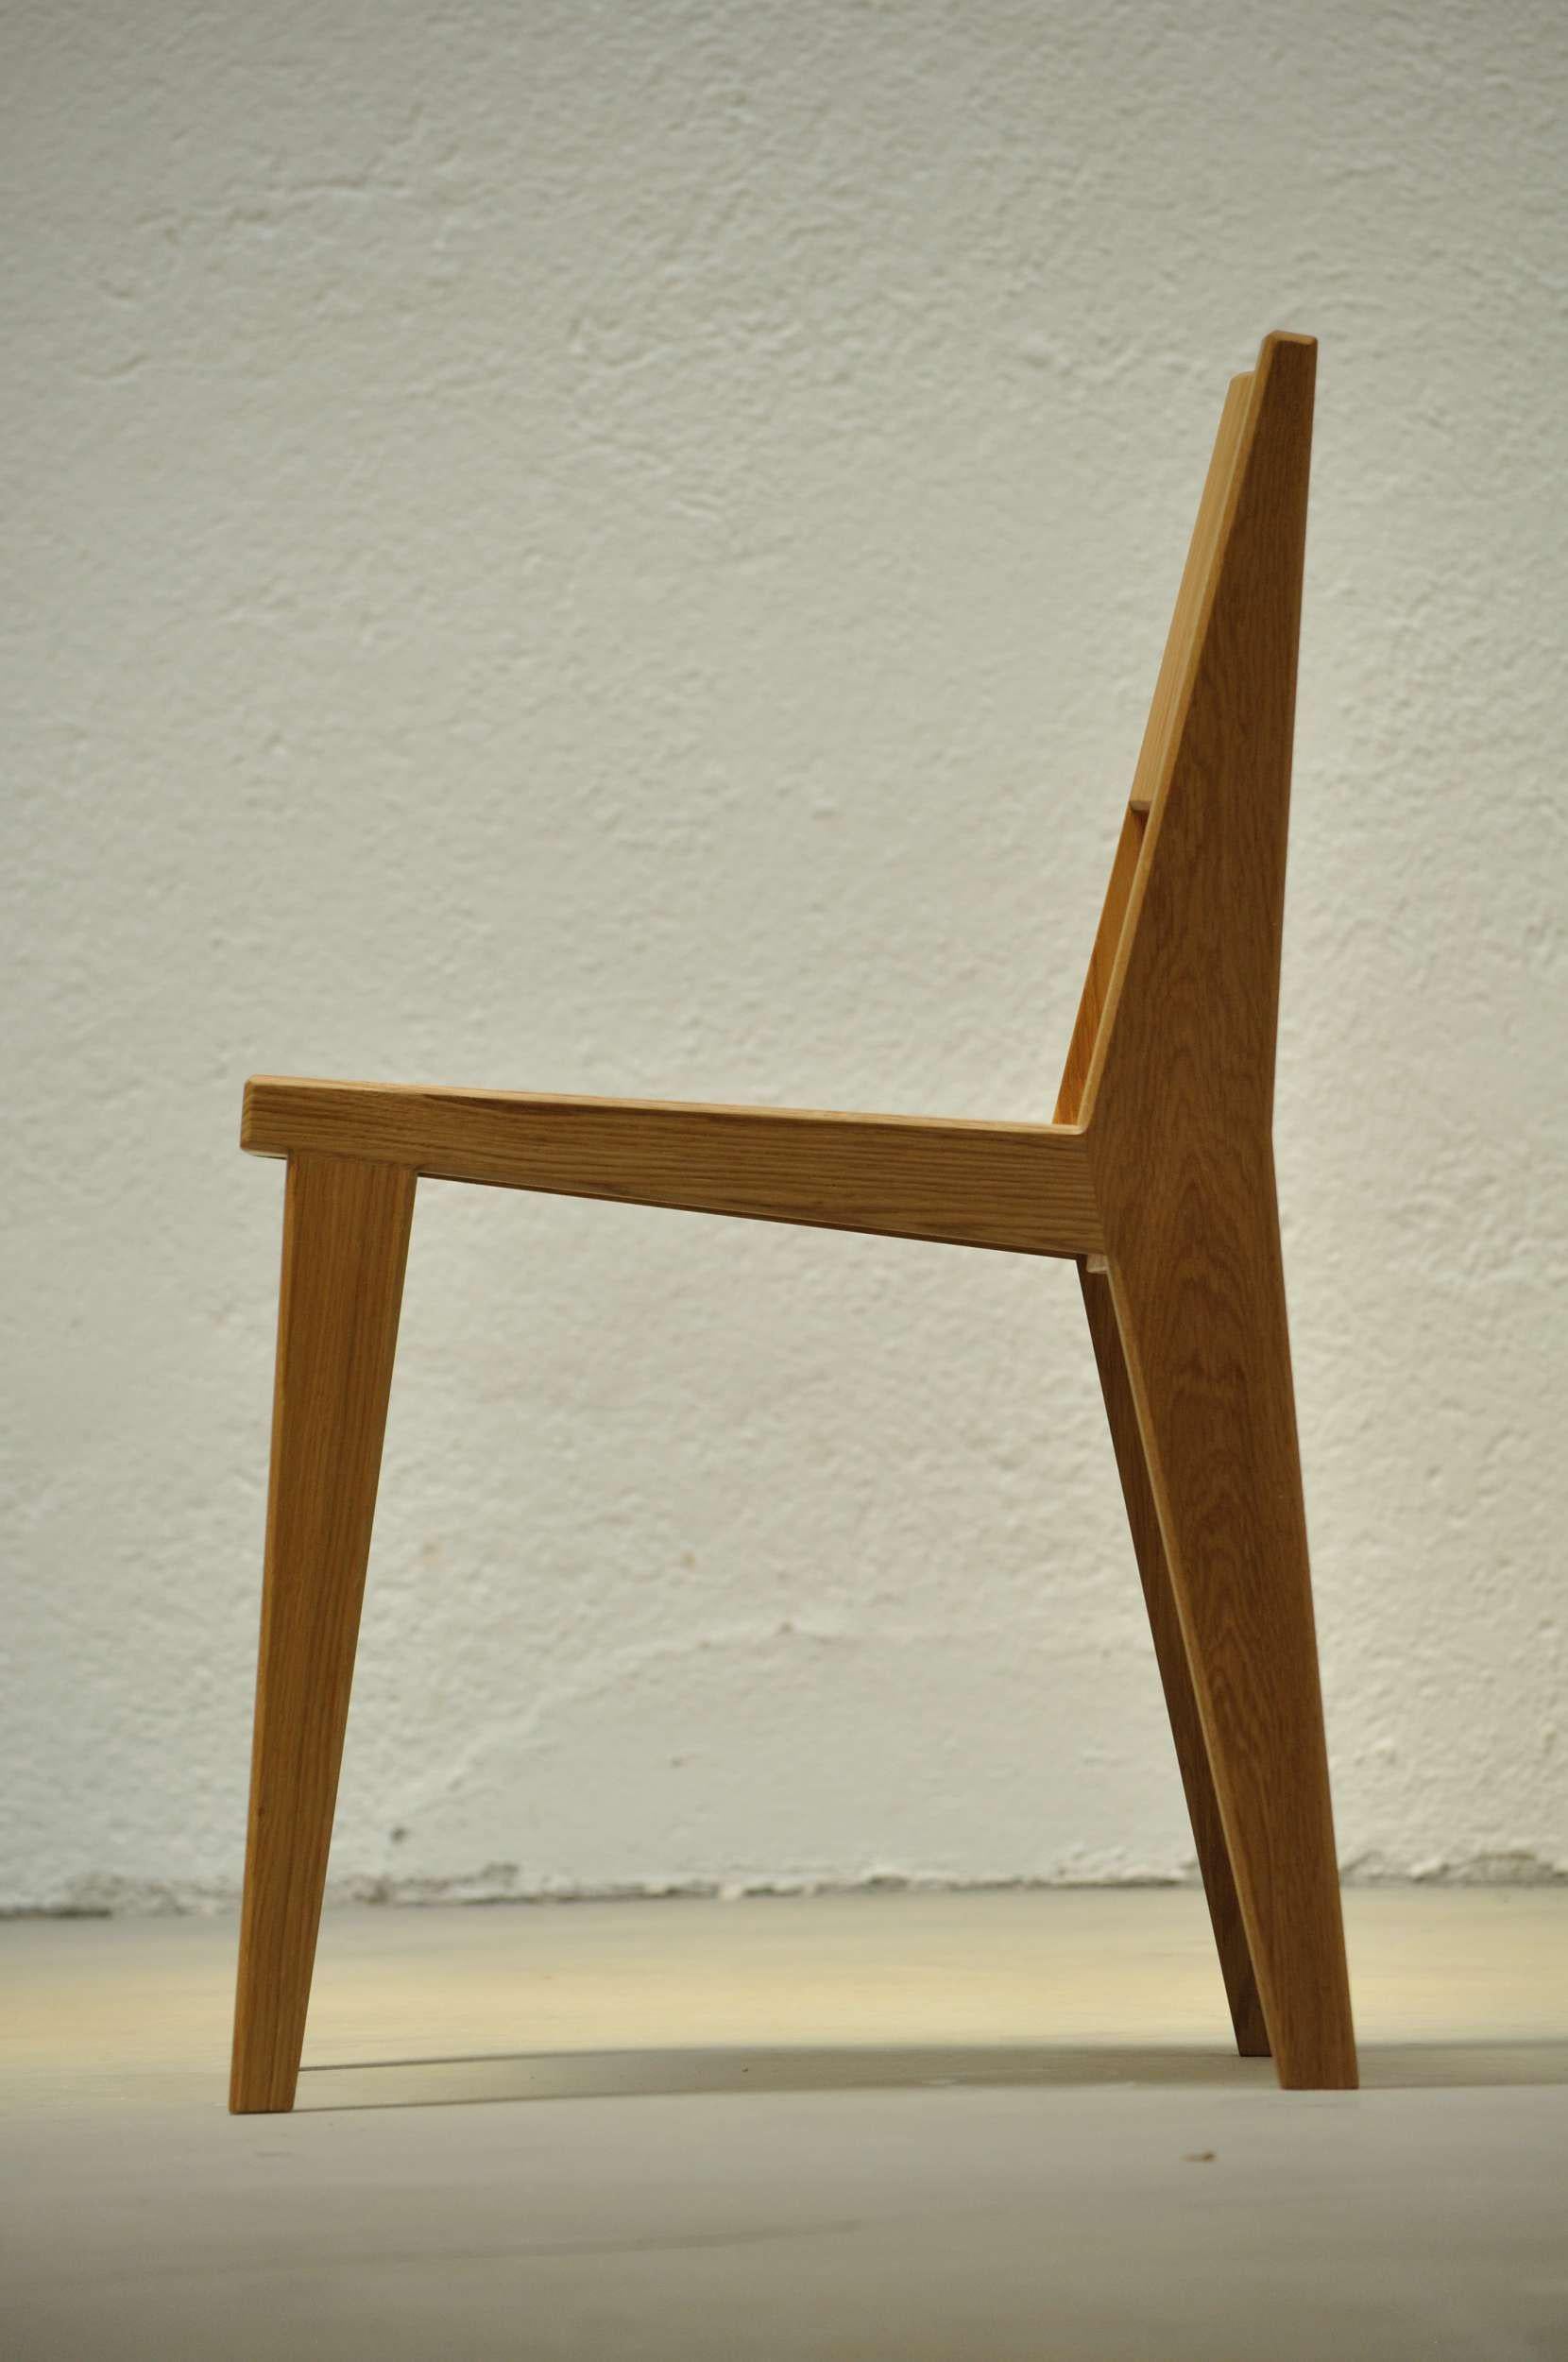 Der Stuhl #1 fügt sich nahtlos in jeden Raum ein und bietet gleichzeitig Komfort und zeitlosen Stil. Dieser mit Sorgfalt handgefertigte Stuhl zeigt die natürliche Schönheit des Eichenholzes, wie auf den Fotos zu sehen ist. Sollten Sie jedoch eine